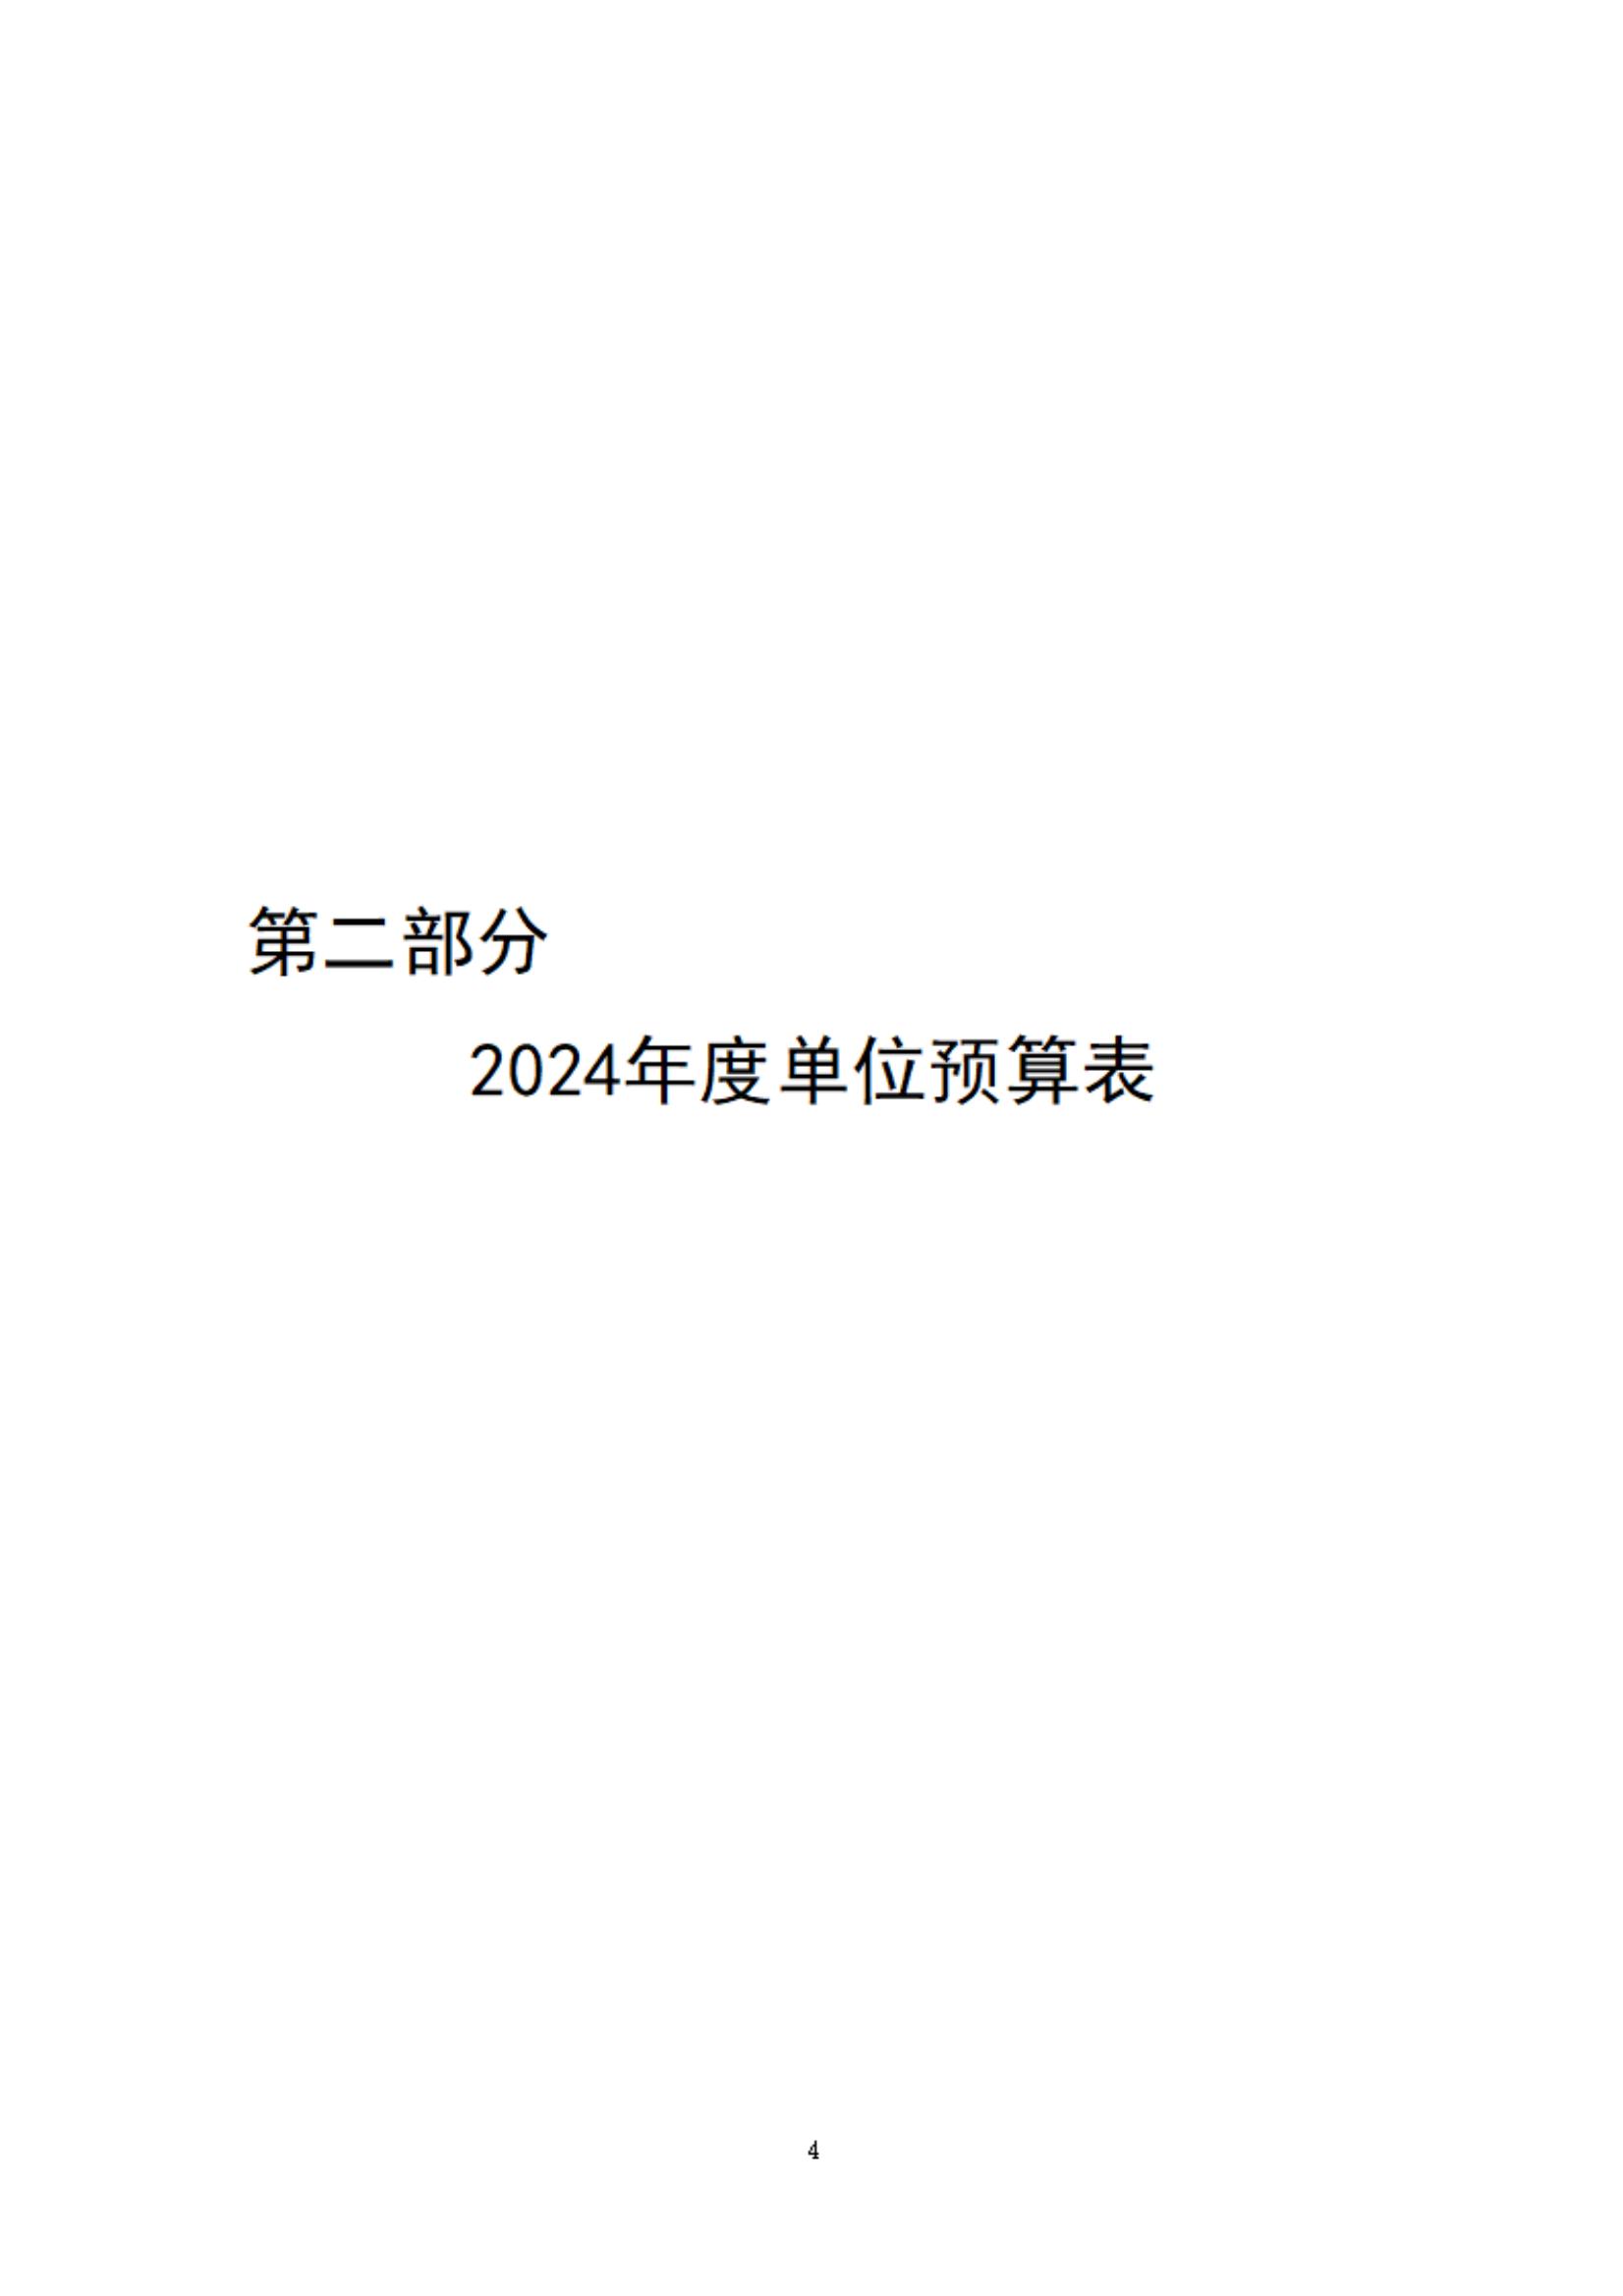 2024年度福建交通职业技术学校单位预算_06.jpg